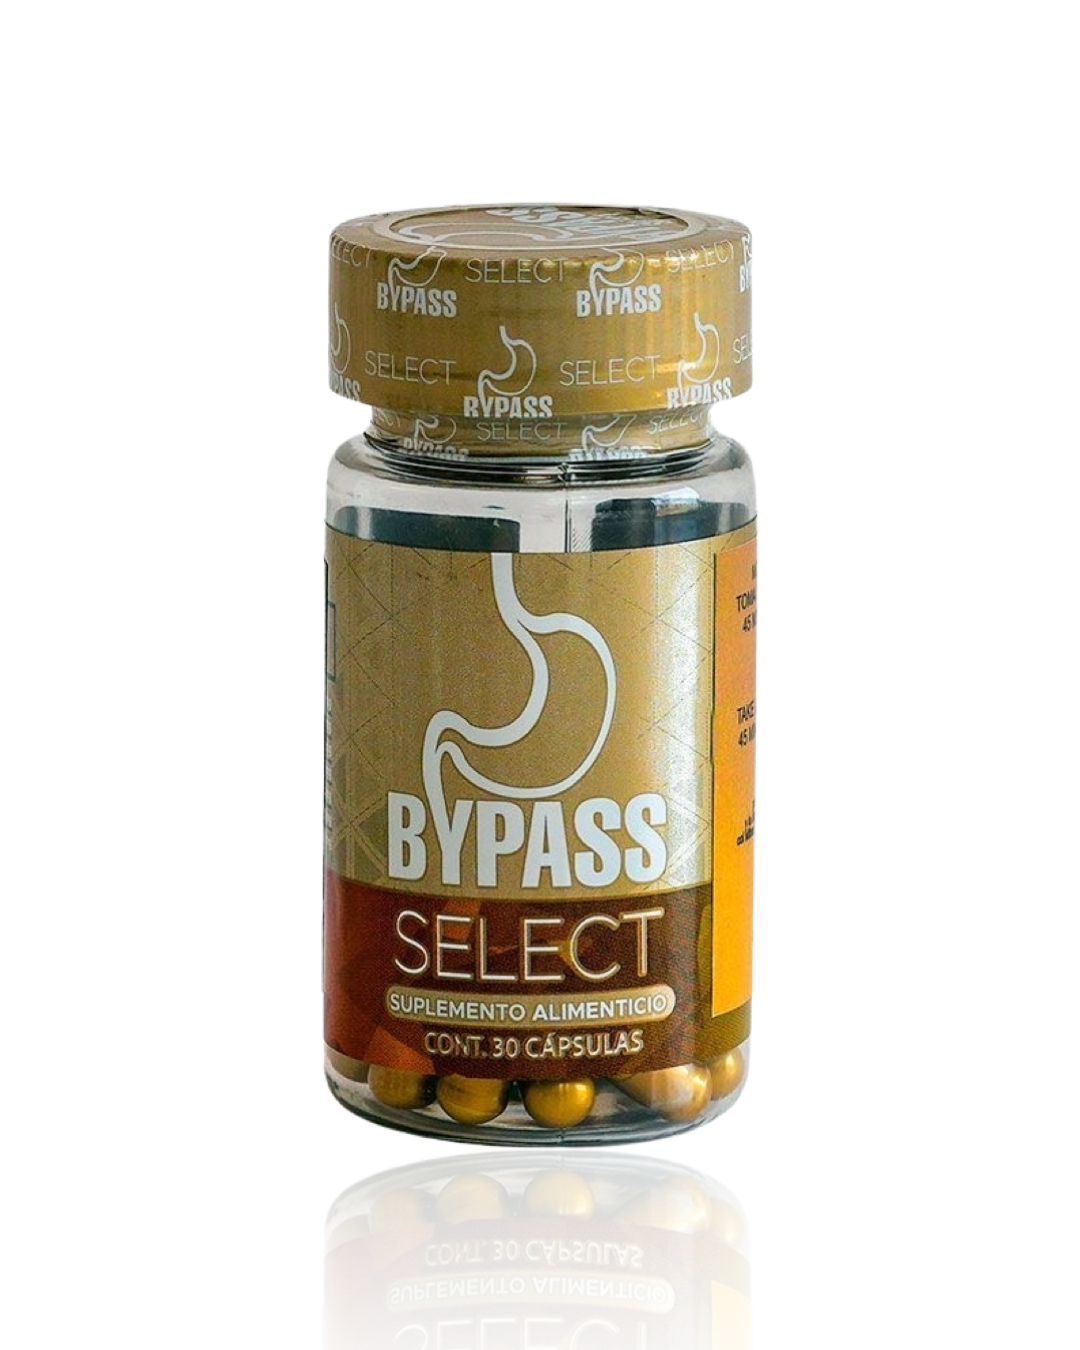 ByPass Selectt